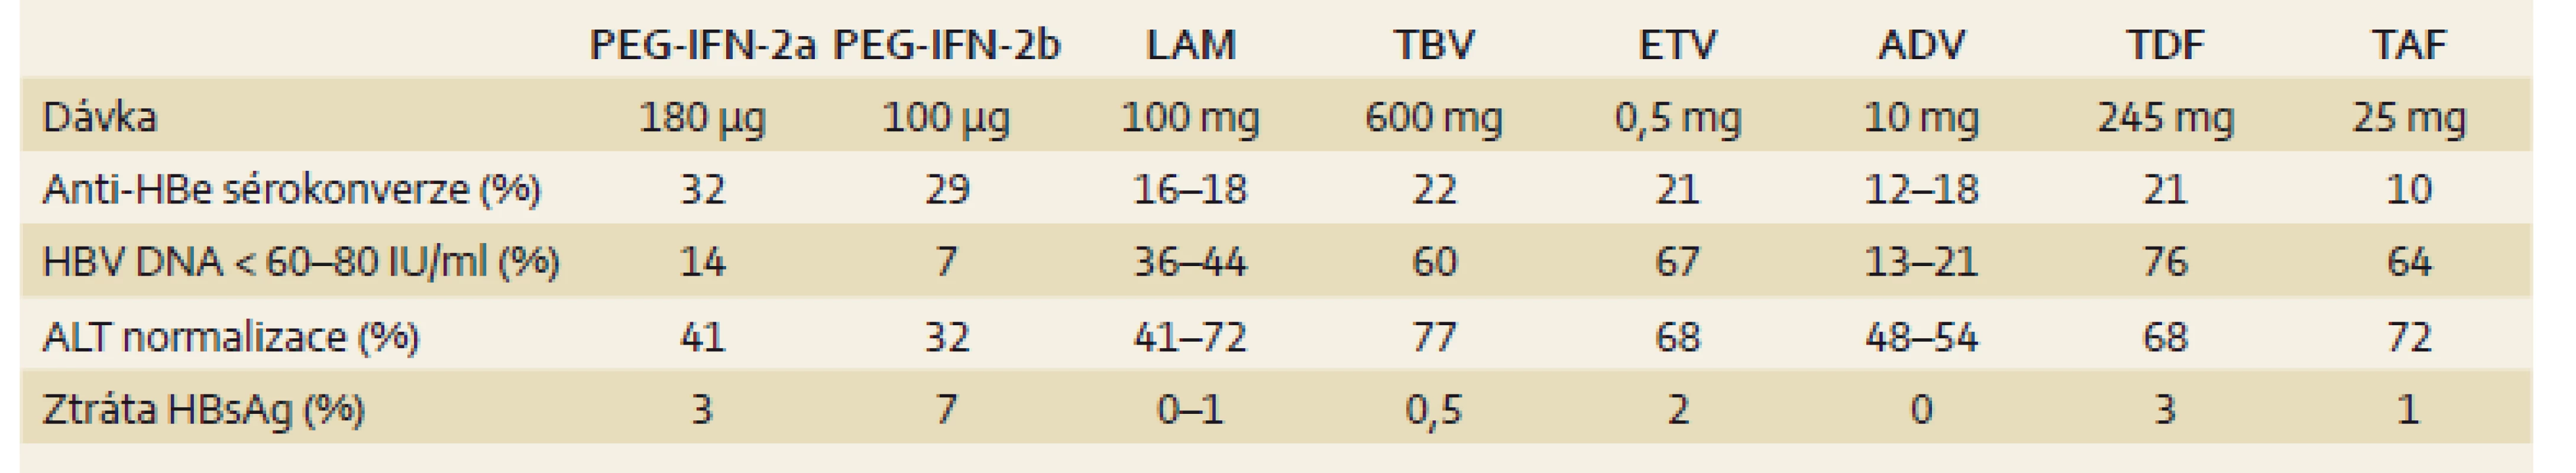 Výsledky léčby HBeAg pozitivních pacientů (u PEG-IFN 6 měsíců po 48 nebo 52 týdnech léčby, u NA po 48 nebo 52 týdnech dosud probíhající léčby) [3].
Tab. 1. Results of treatment of HBeAg-positive patients (PEG-IFN 6 months after 48 or 52 weeks of treatment, nucleotide analogs at 48 or 52 weeks of treatment) [3].